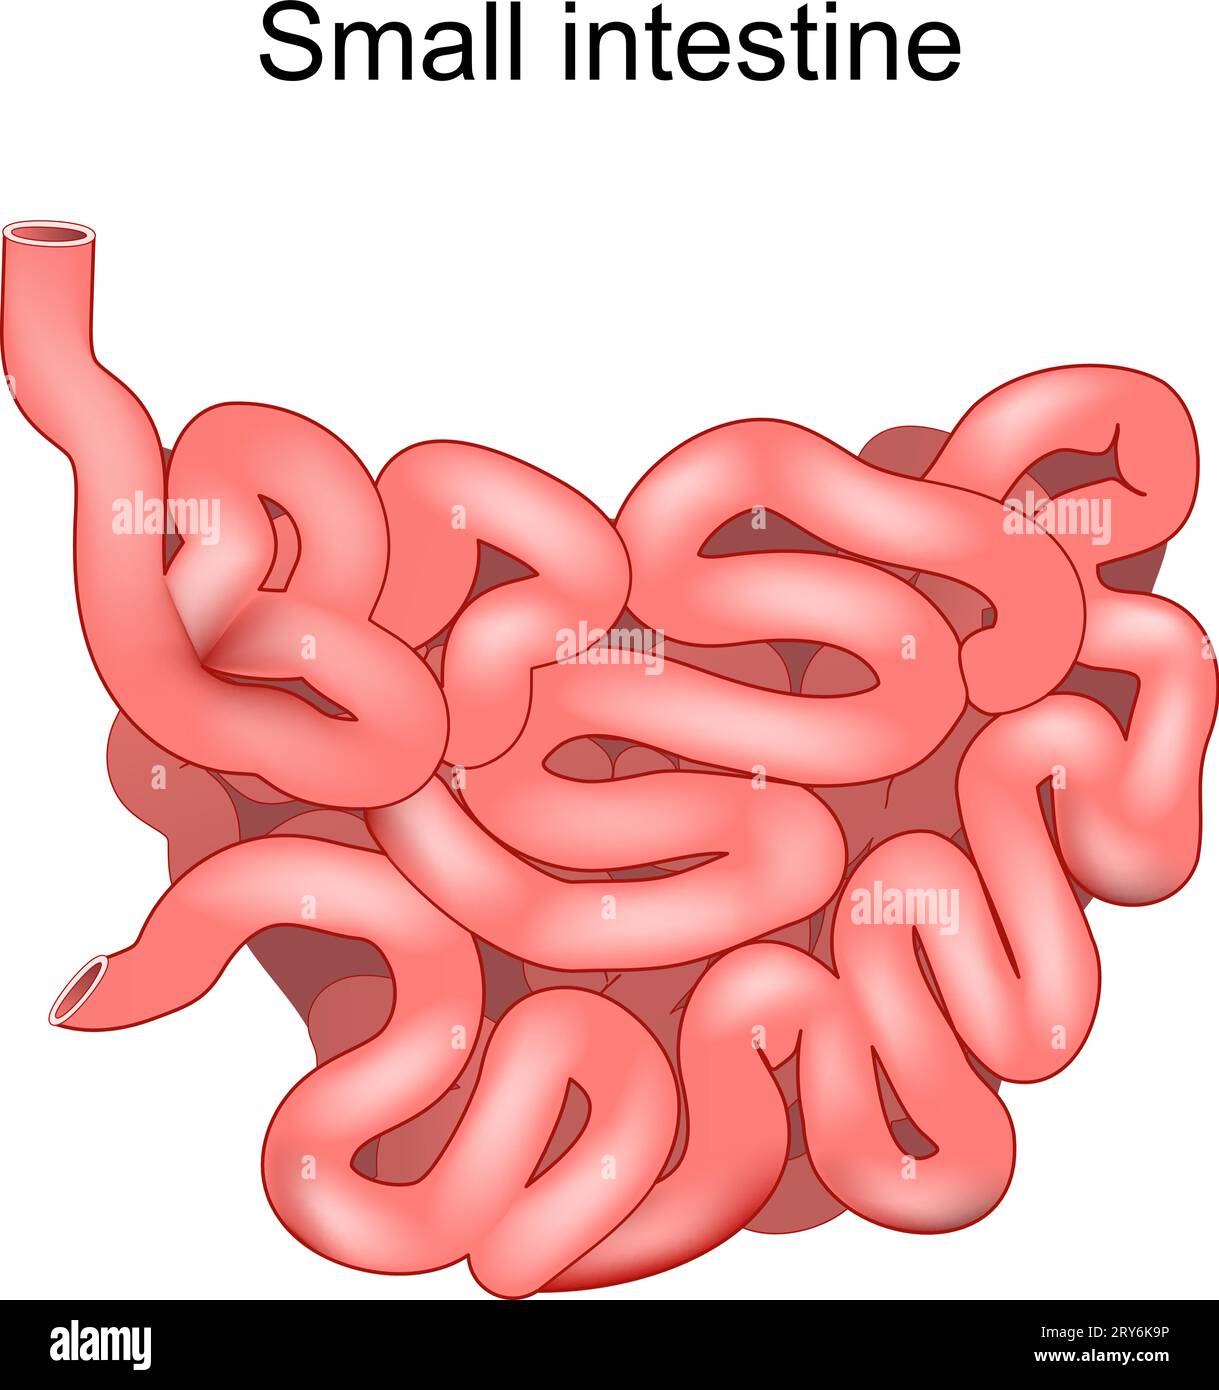 Intestino tenue. Illustrazione medica. Anatomia umana. L'intestino tenue fa parte di un tratto gastrointestinale. Apparato digerente. Illustrazione vettoriale Illustrazione Vettoriale